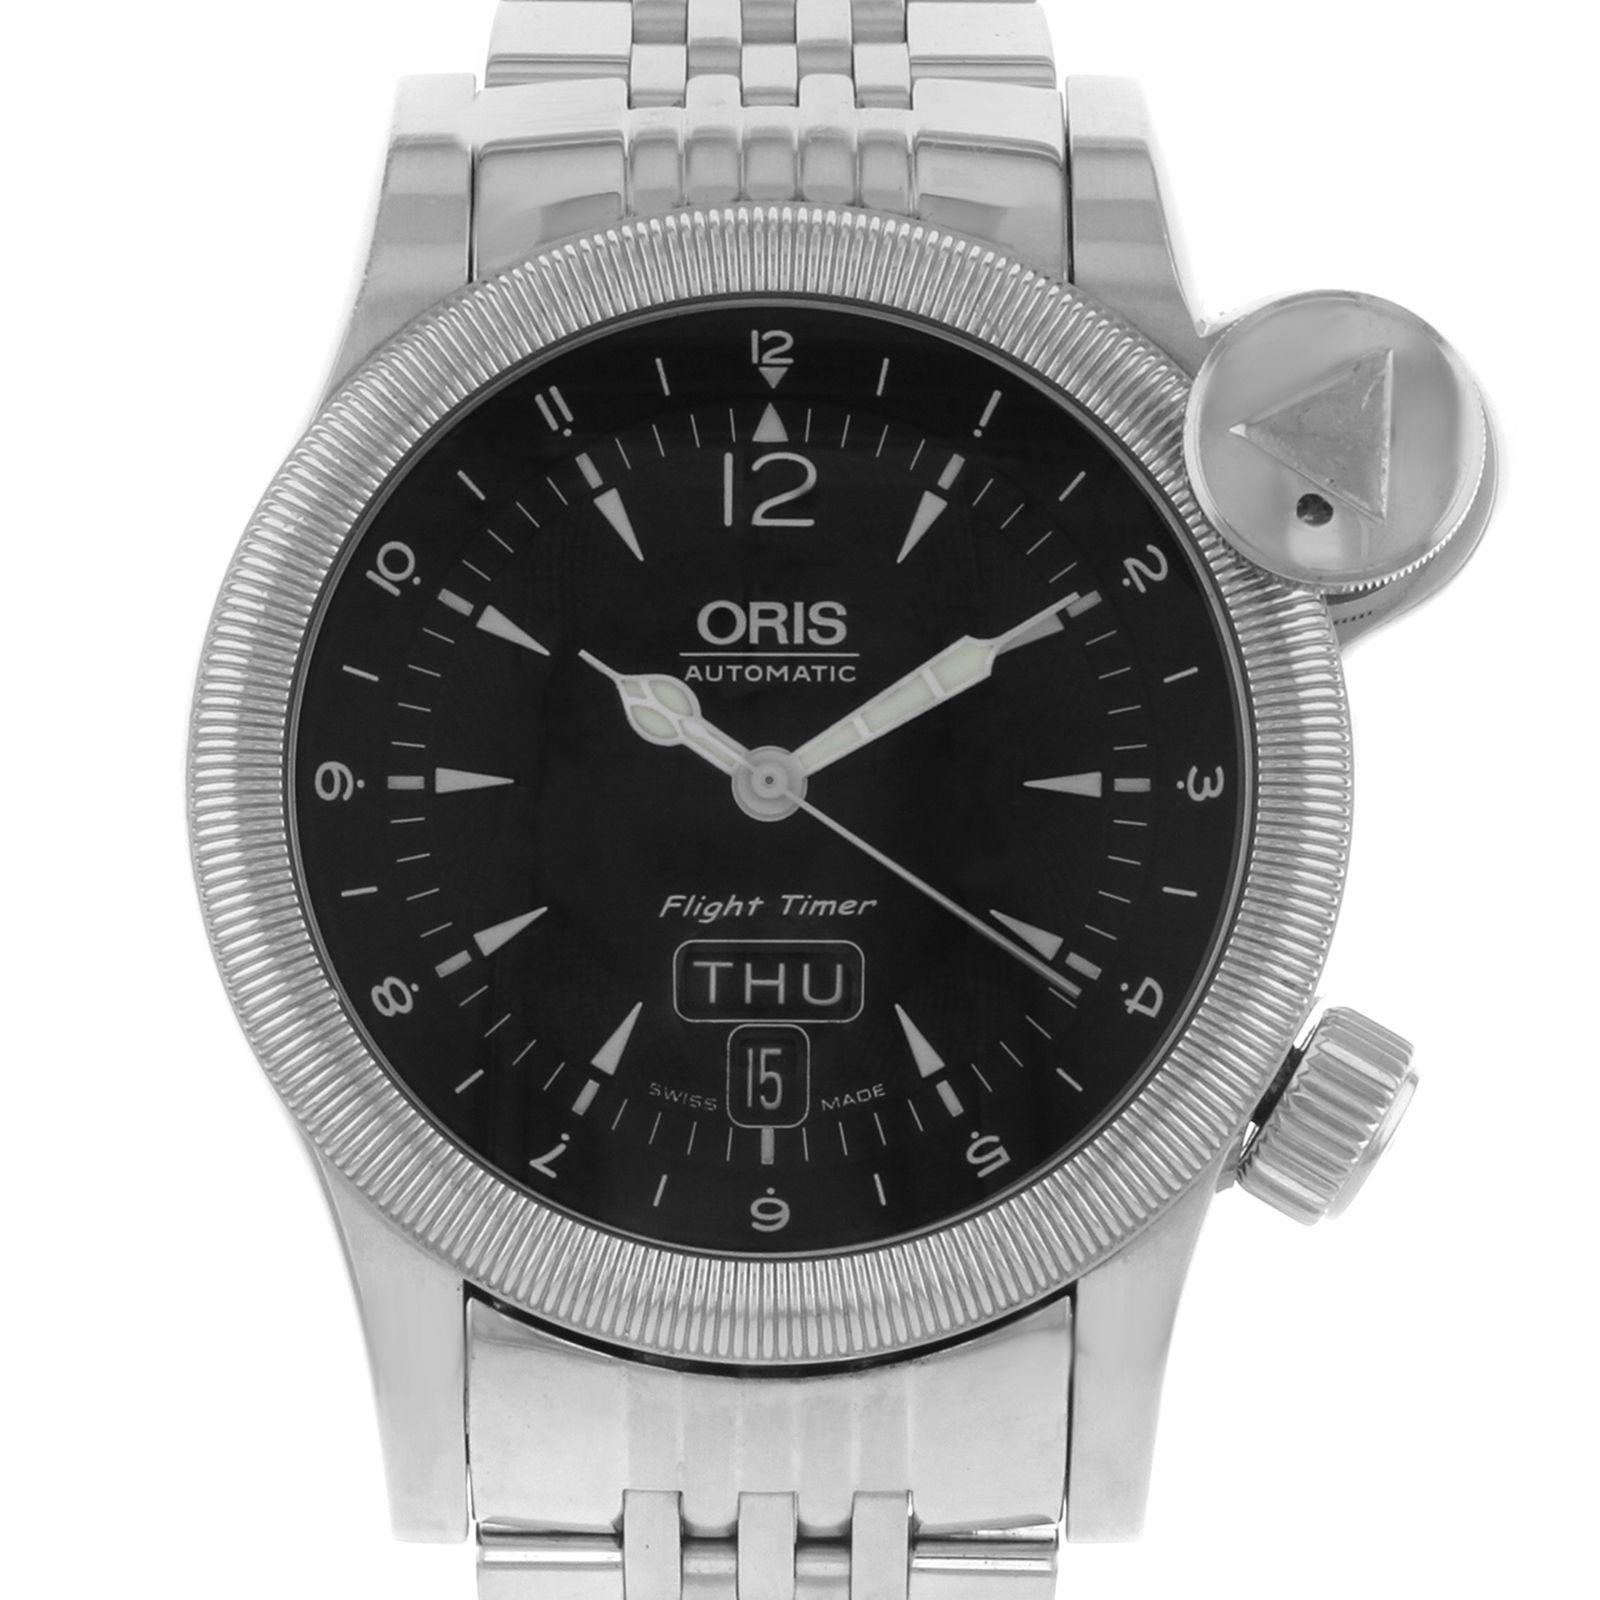 Diese gebrauchte Oris Flight Timer 63575684064 ist eine schöne Herrenuhr, die von einem mechanischen (automatischen) Uhrwerk angetrieben wird, das in einem Edelstahlgehäuse untergebracht ist. Es hat eine runde Form Gesicht, Chronograph, Tag und